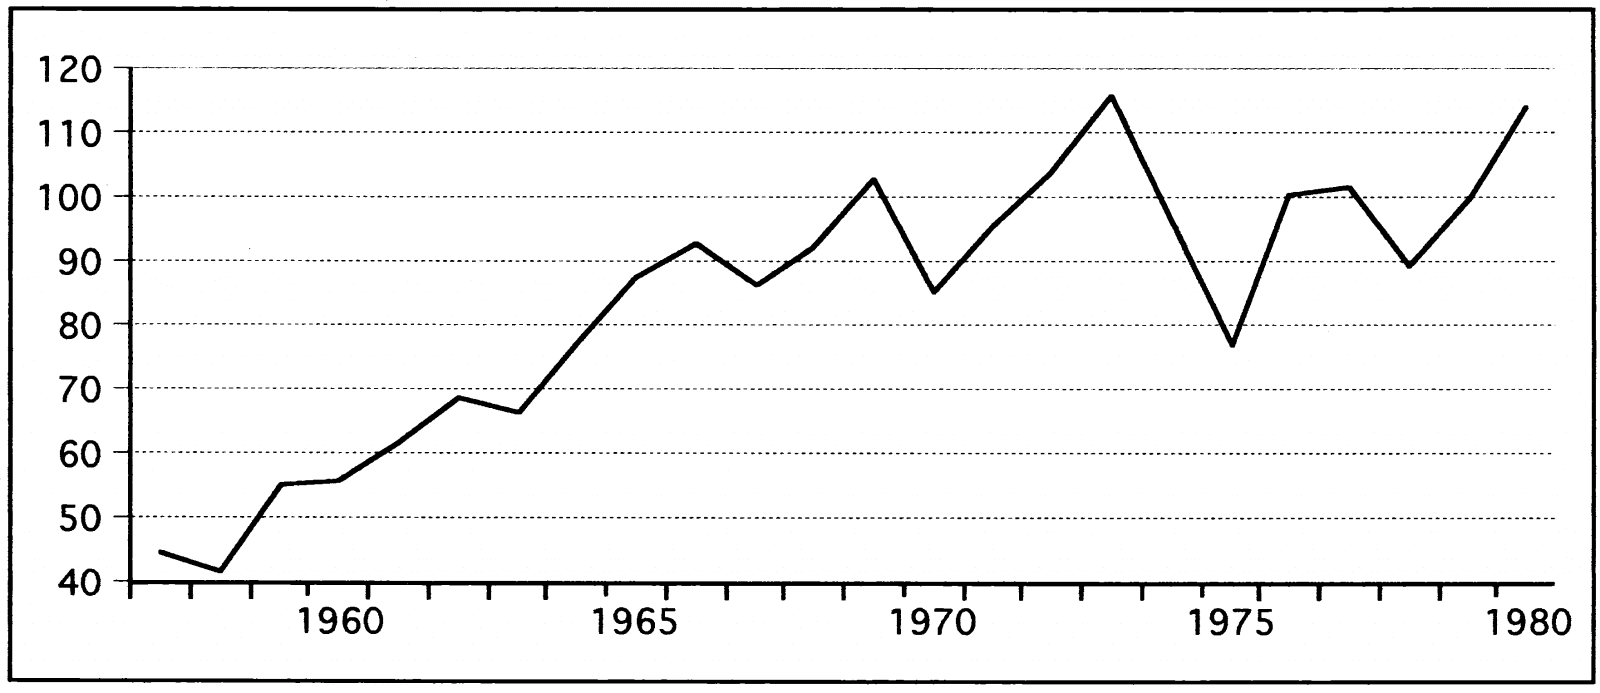 השנים 1957-1980 ביתר פירוט 